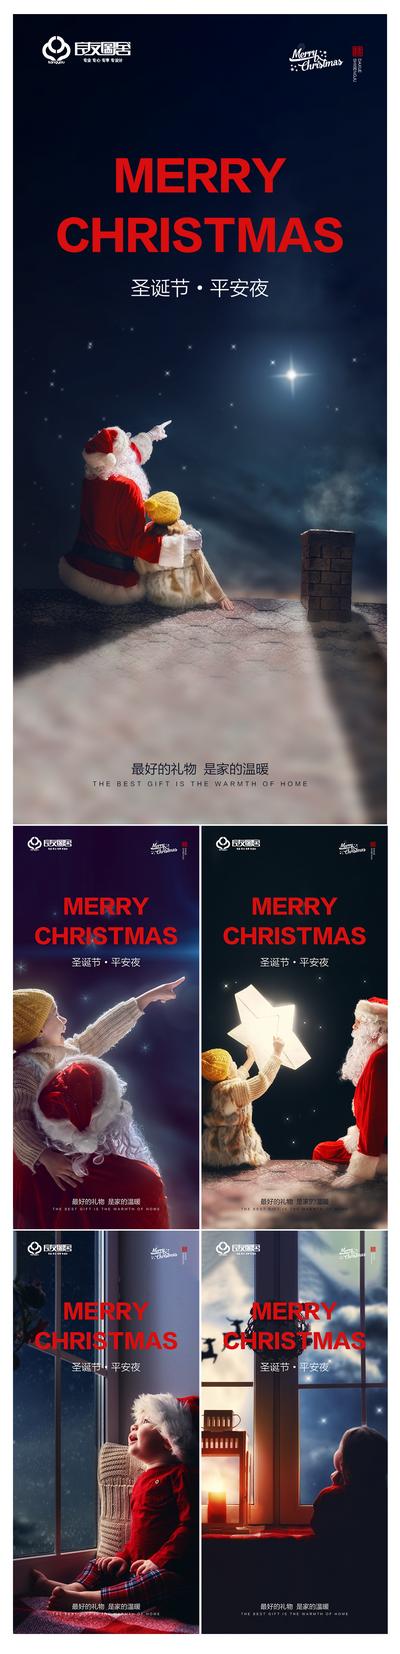 南门网 海报 房地产 公历节日 圣诞节 平安夜 圣诞老人 系列